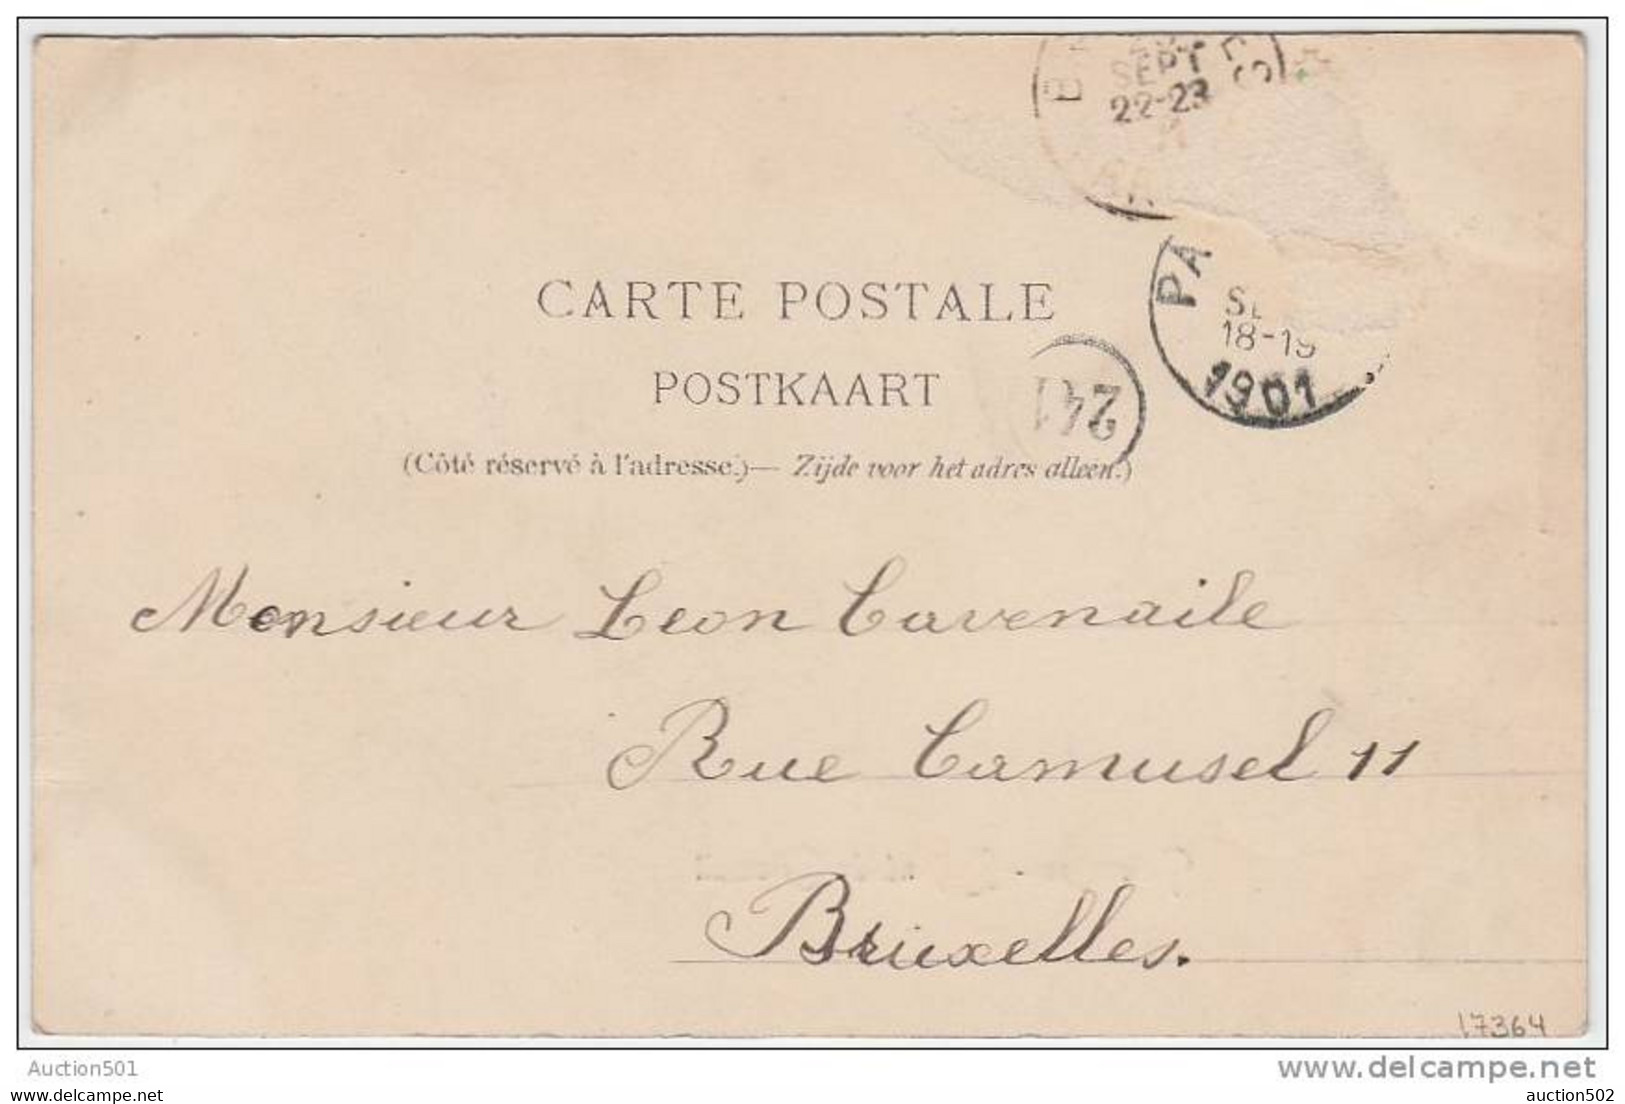 17364g ENTREE Du VILLAGE - Fond De Grisoeuil - Paturages - 1901 - Colfontaine